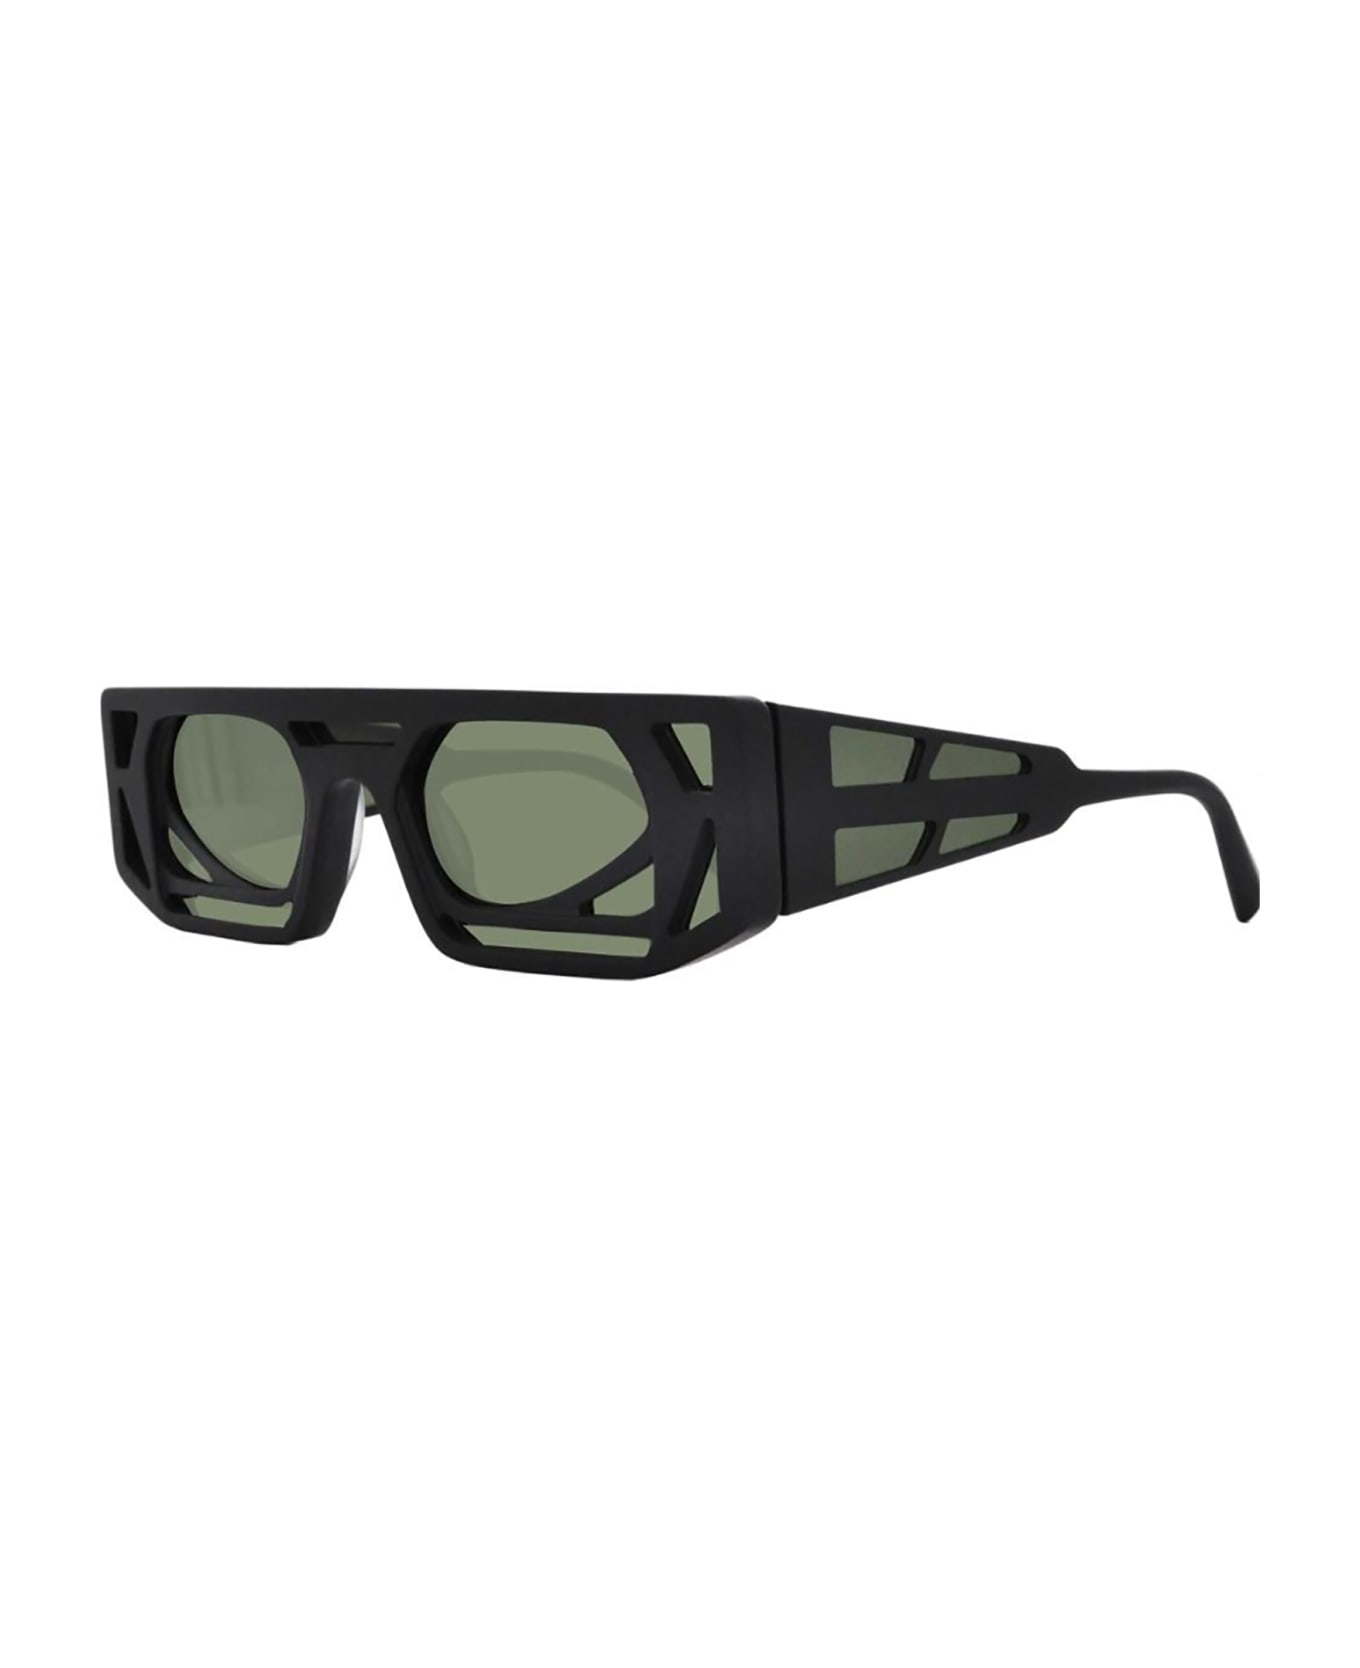 Kuboraum T9 Sunglasses - Bm サングラス